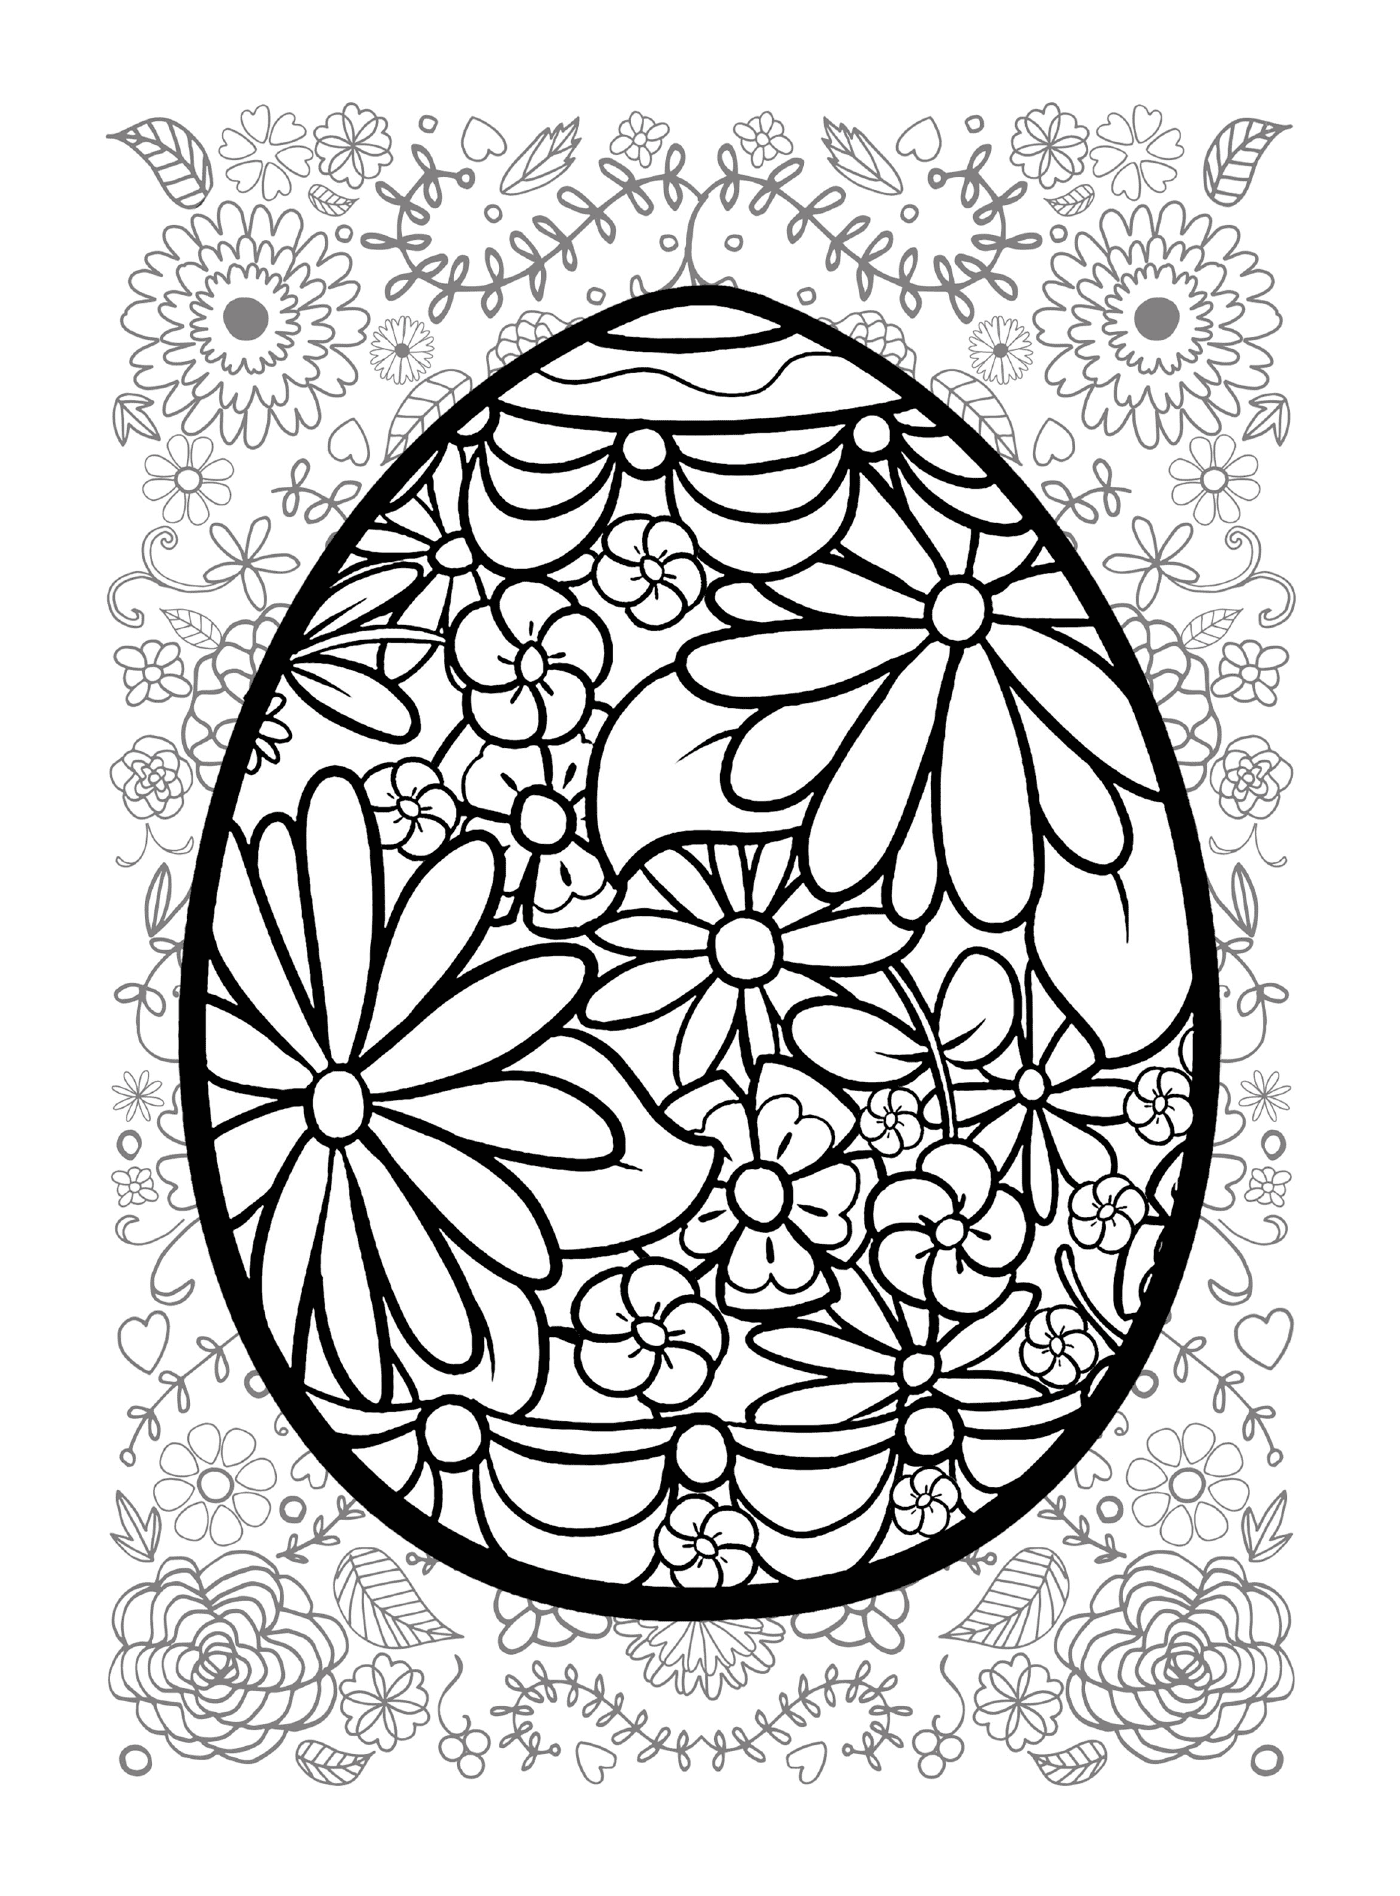  ईस्टर अंडे जो फूलली पृष्ठभूमि में होती है 